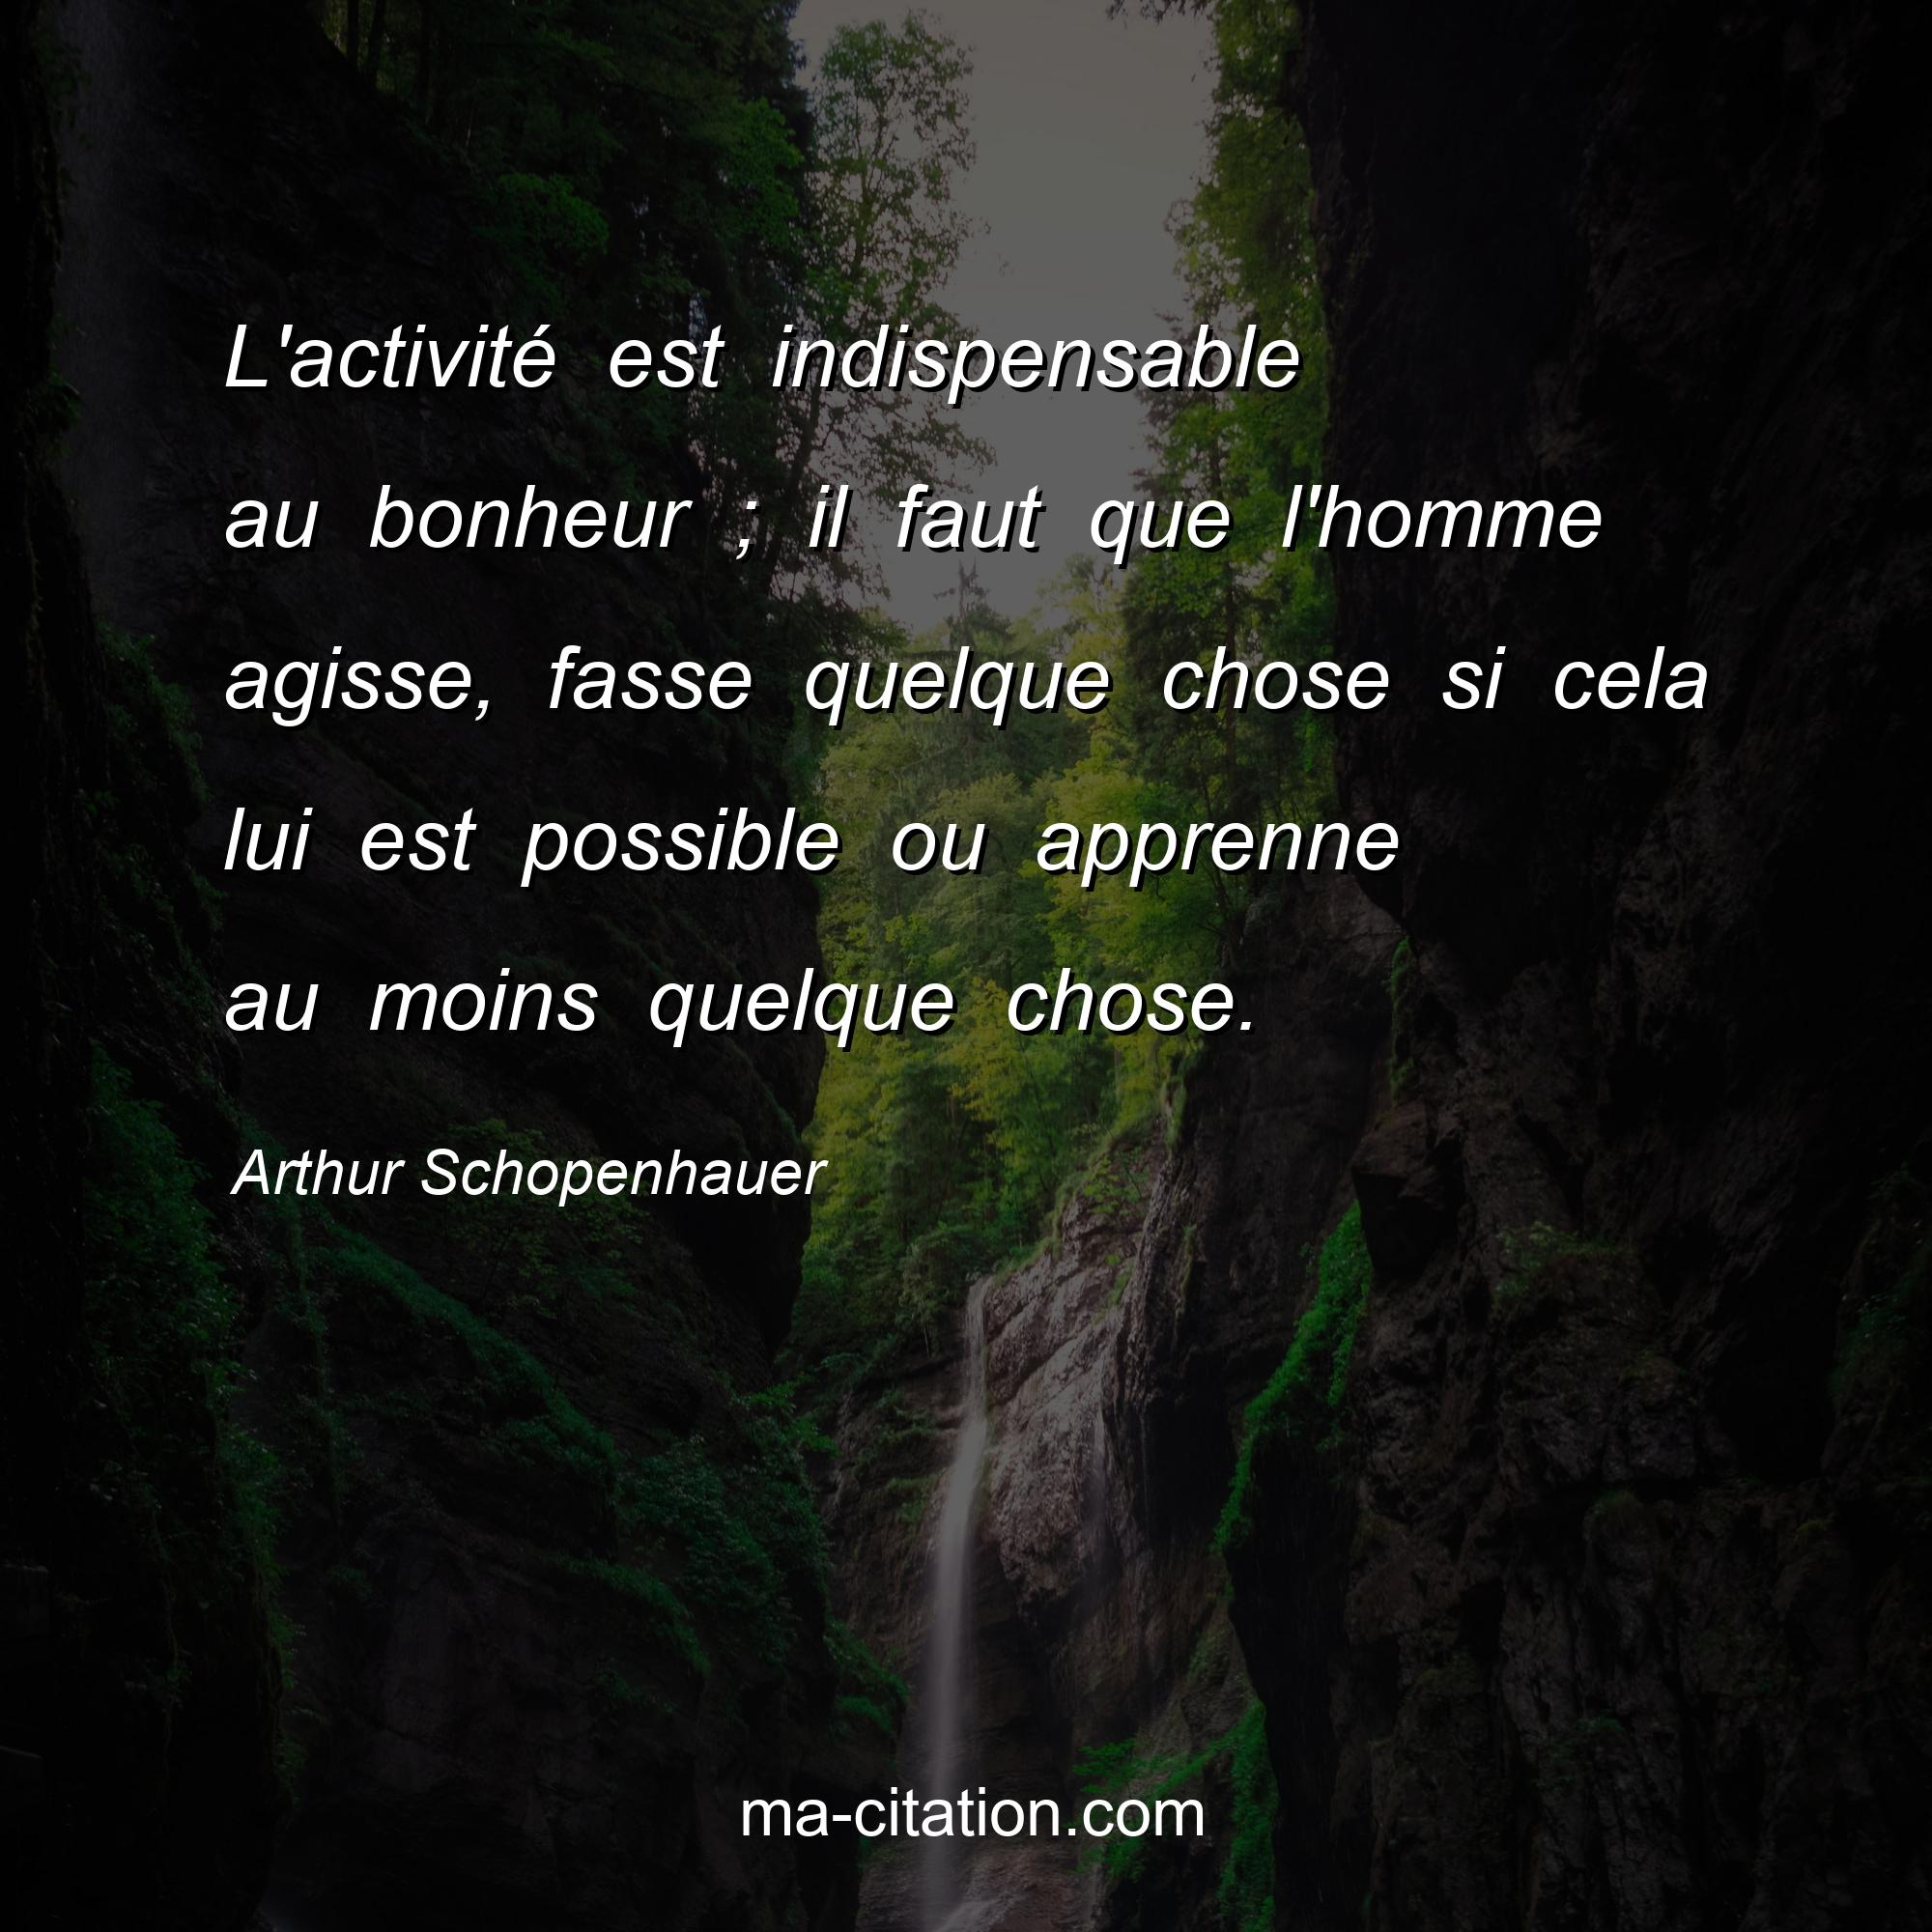 Arthur Schopenhauer : L'activité est indispensable au bonheur ; il faut que l'homme agisse, fasse quelque chose si cela lui est possible ou apprenne au moins quelque chose.